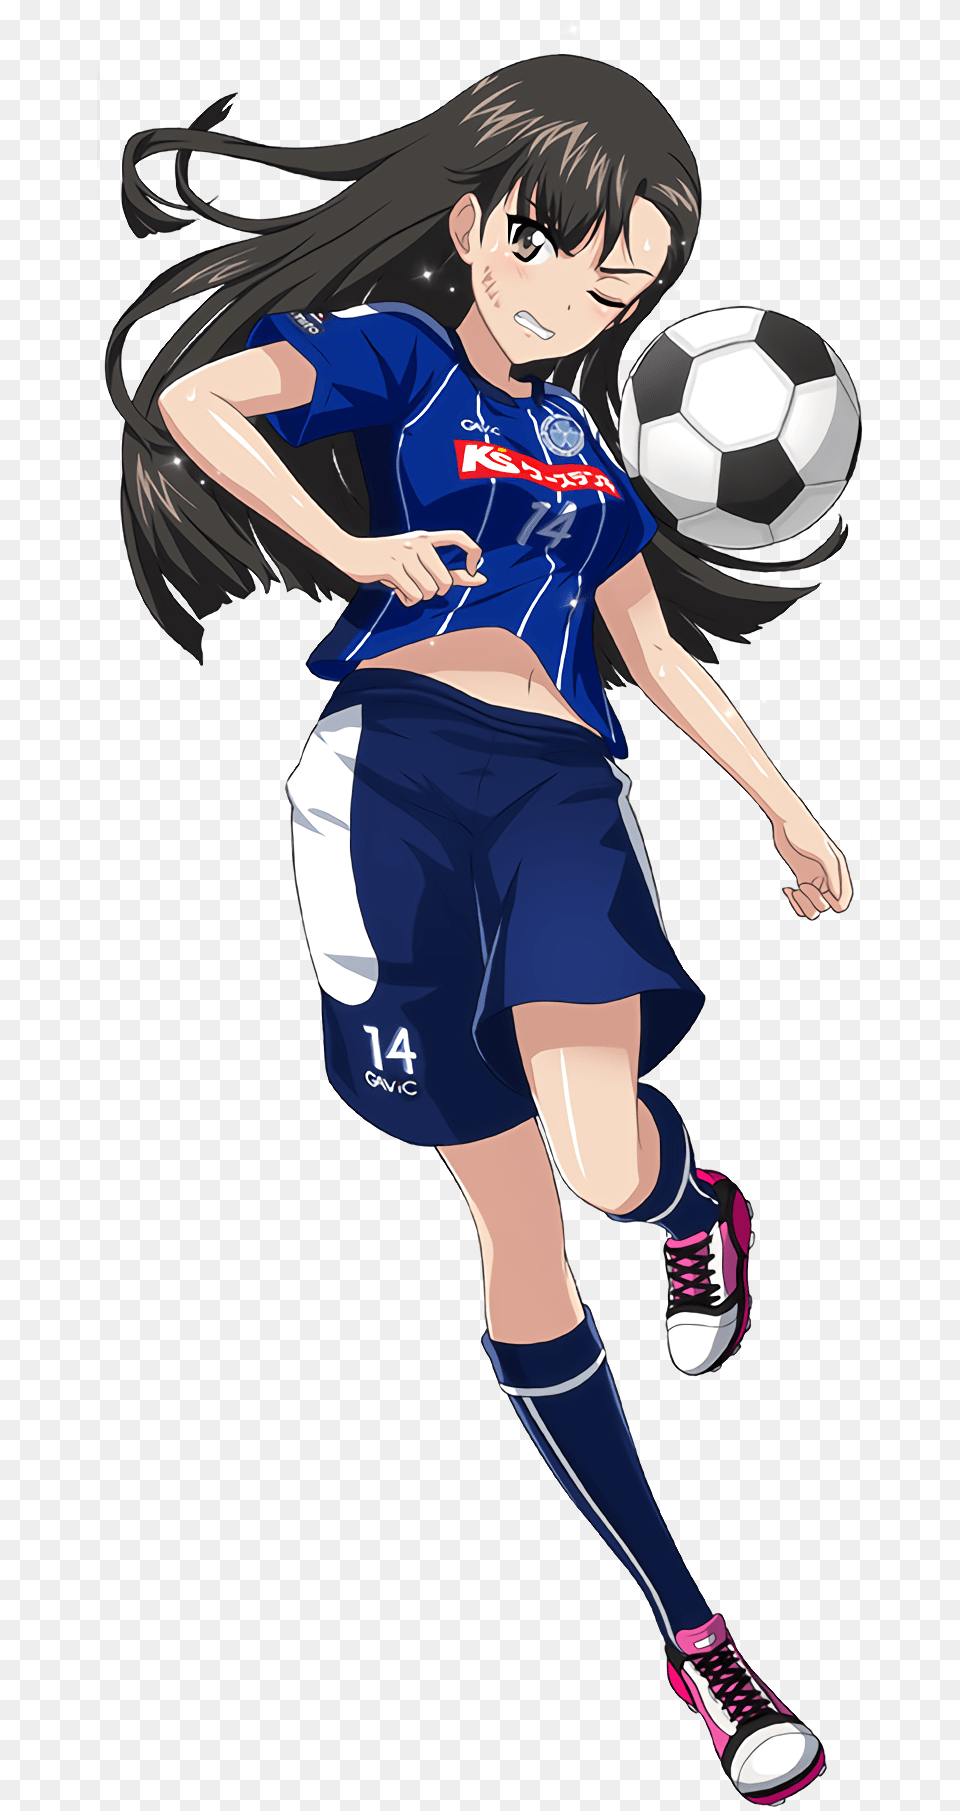 Anime Girl Playing Soccer Anime Girl Playing Soccer, Book, Comics, Publication, Adult Png